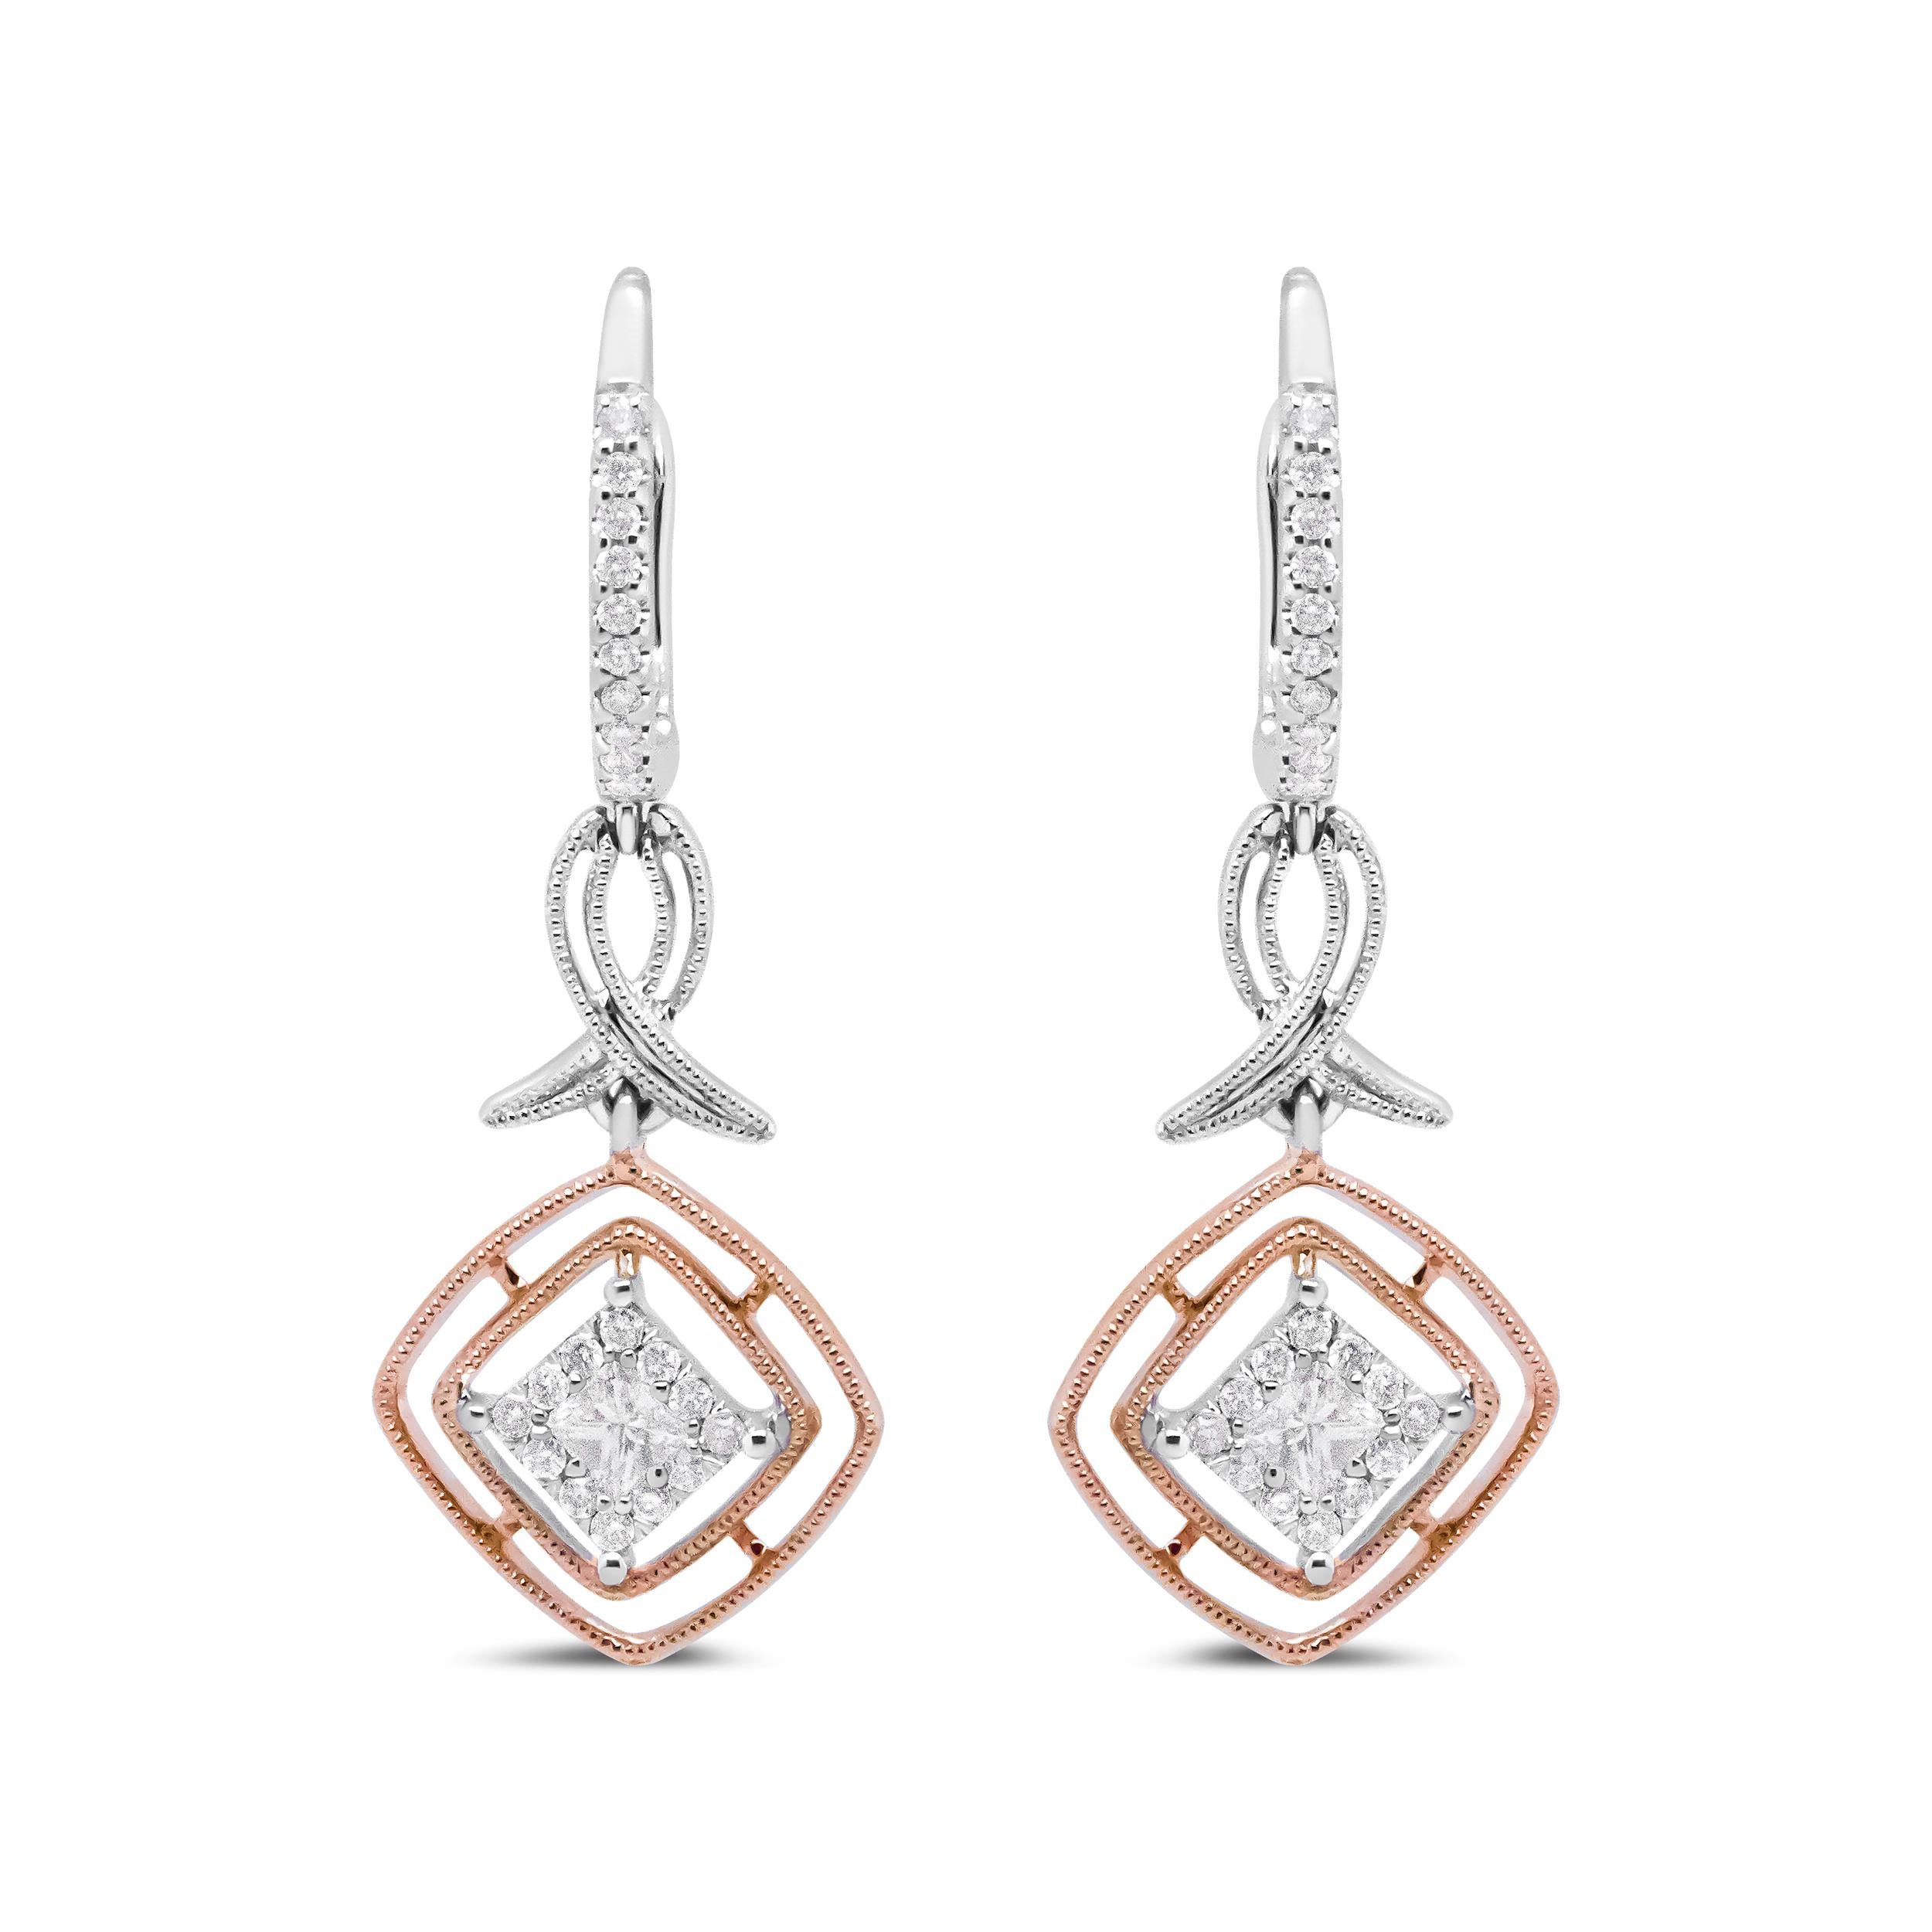 Diese zweifarbigen Diamantohrringe sind einzigartig und erfrischend. Sie sind aus echtem 14-karätigem Weiß- und Roségold gefertigt. Dieses Stück beginnt mit einem oberen Bügel, der mit runden weißen Diamanten in Zackenfassung besetzt ist. Der